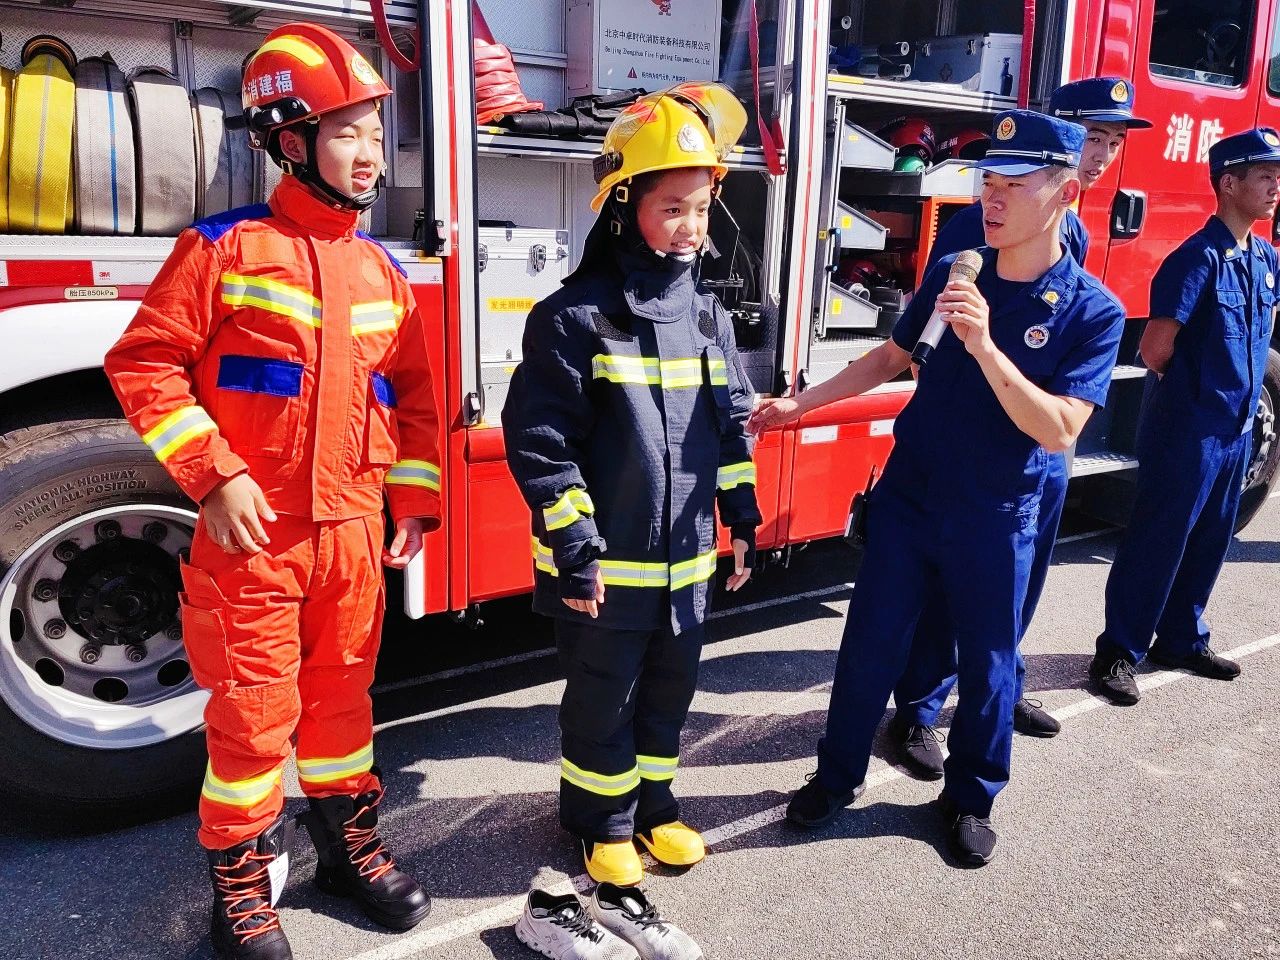 【主题教育】演练强意识 防患于未“燃”|博雅学校开展消防应急疏散演练